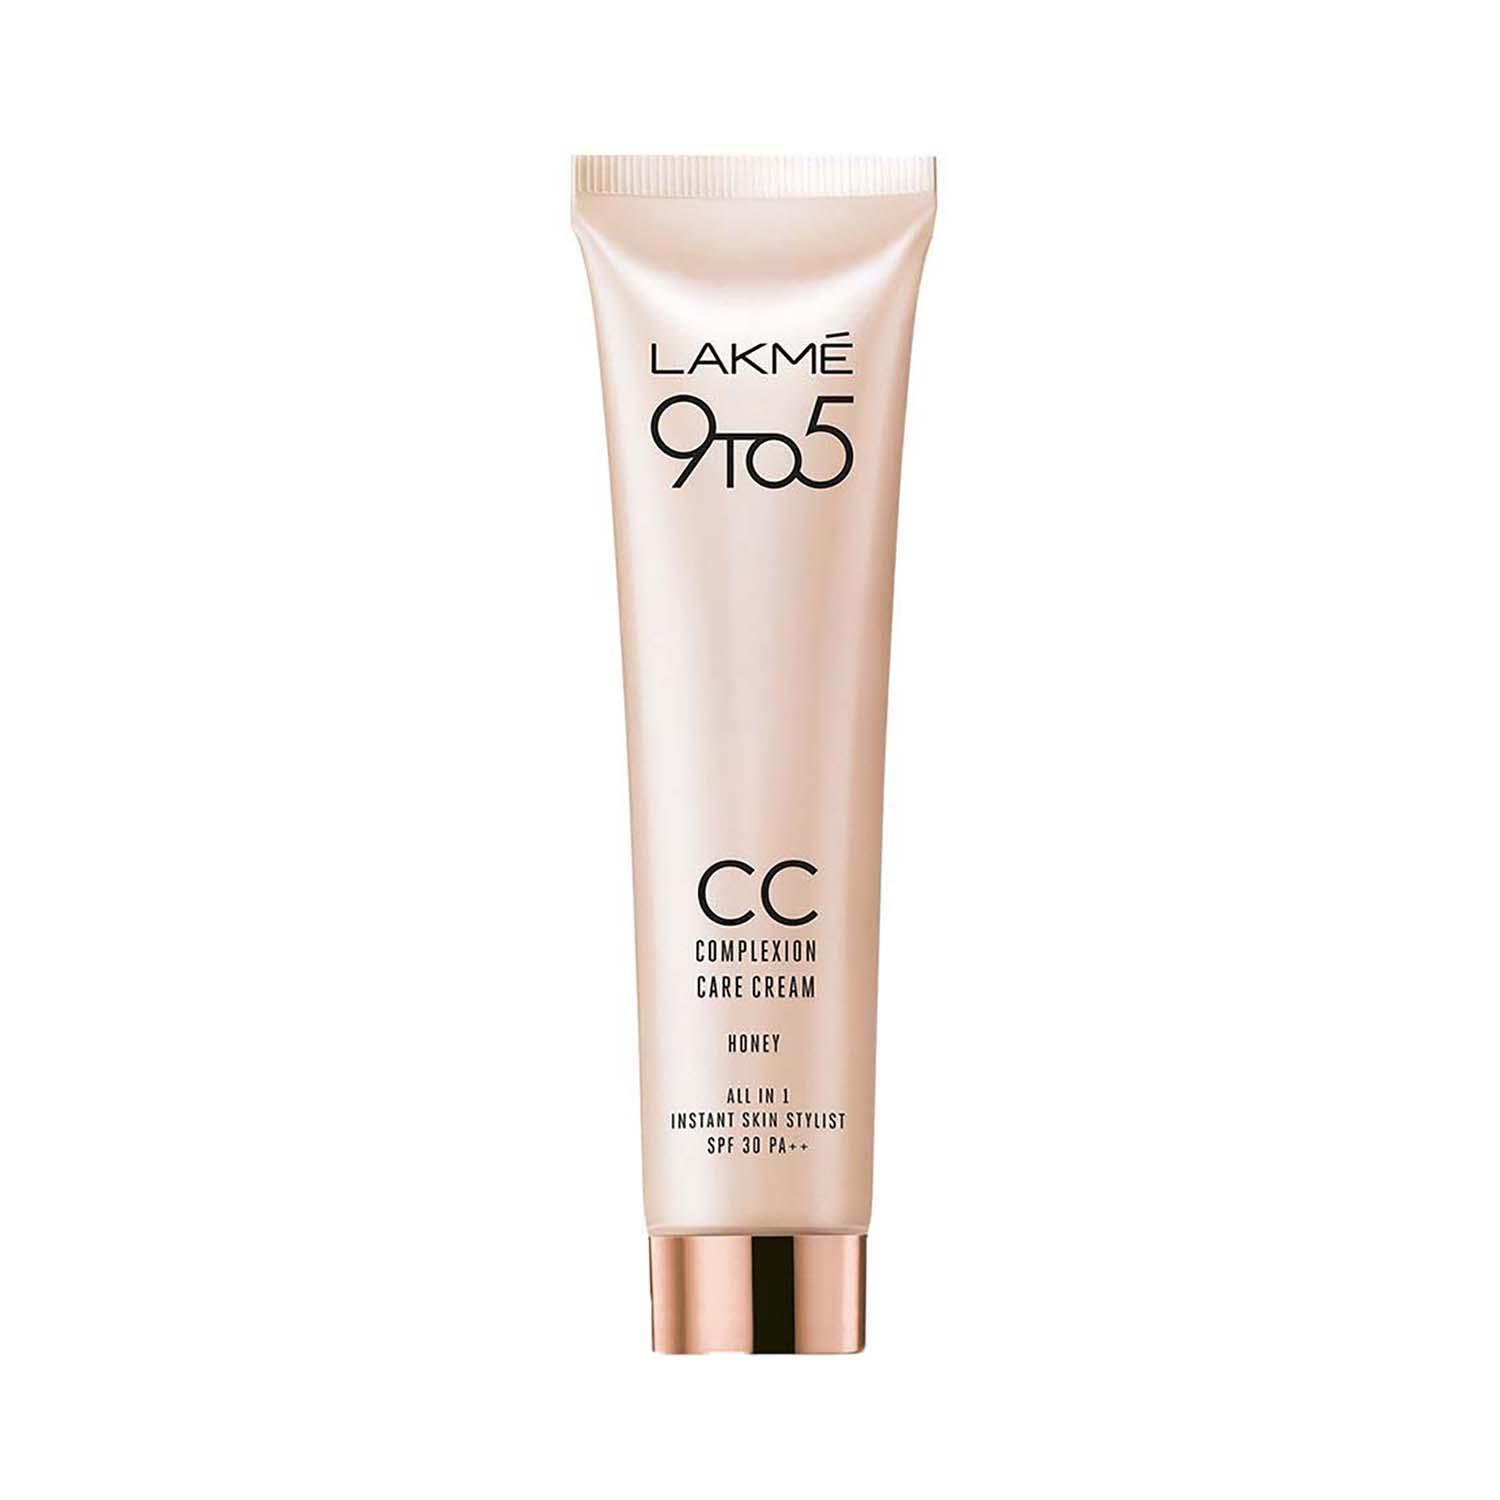 lakme 9 to 5 cc complexion care cream - honey (30g)